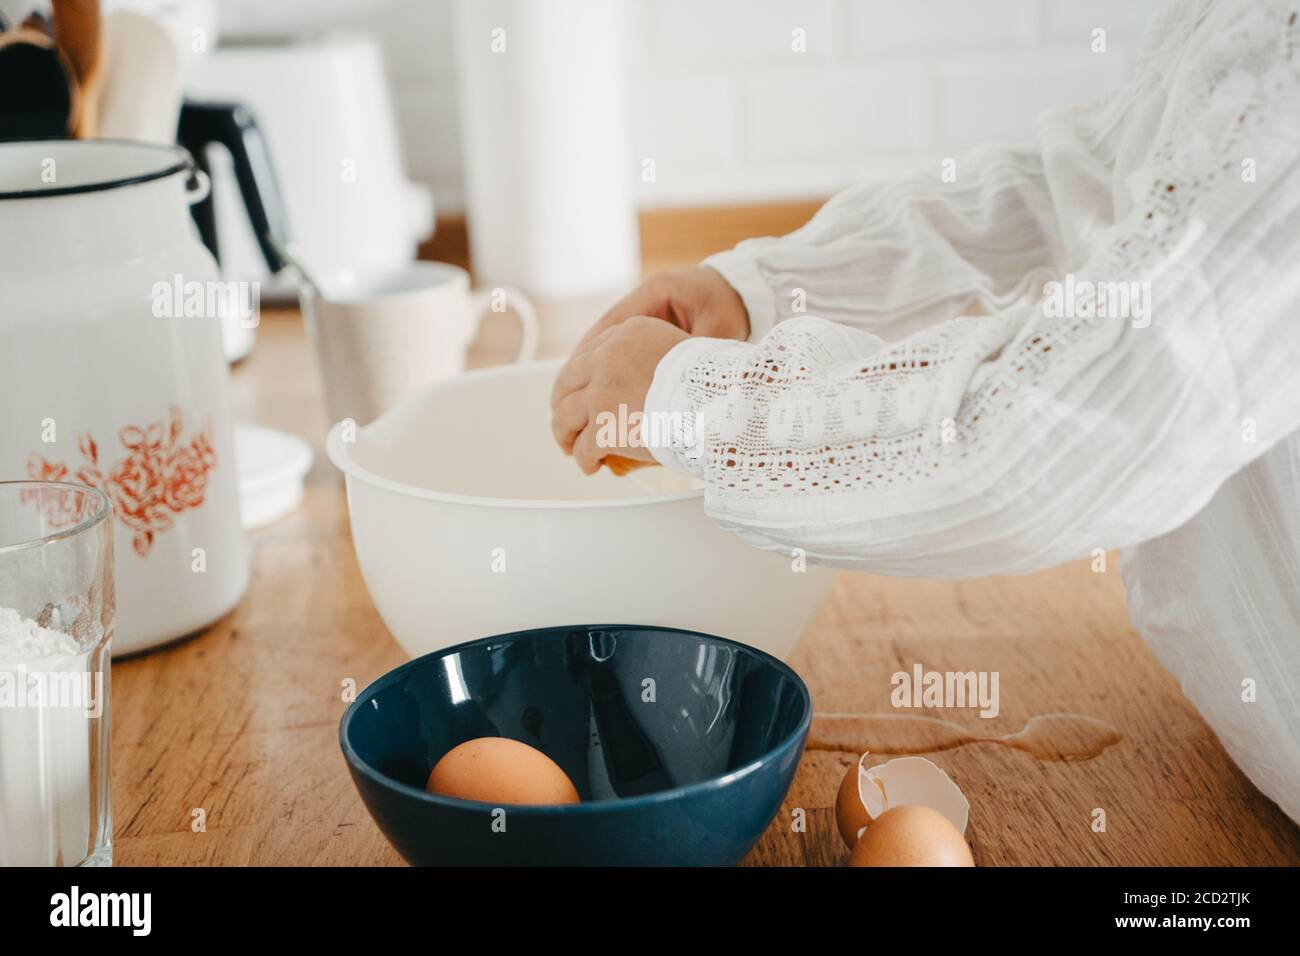 Kleines Mädchen bereitet Teig für Pfannkuchen in der Küche. Konzept der Lebensmittelzubereitung, selektiver Fokus, Nahaufnahme von Details. Freizeit Lifestyle Foto ser Stockfoto